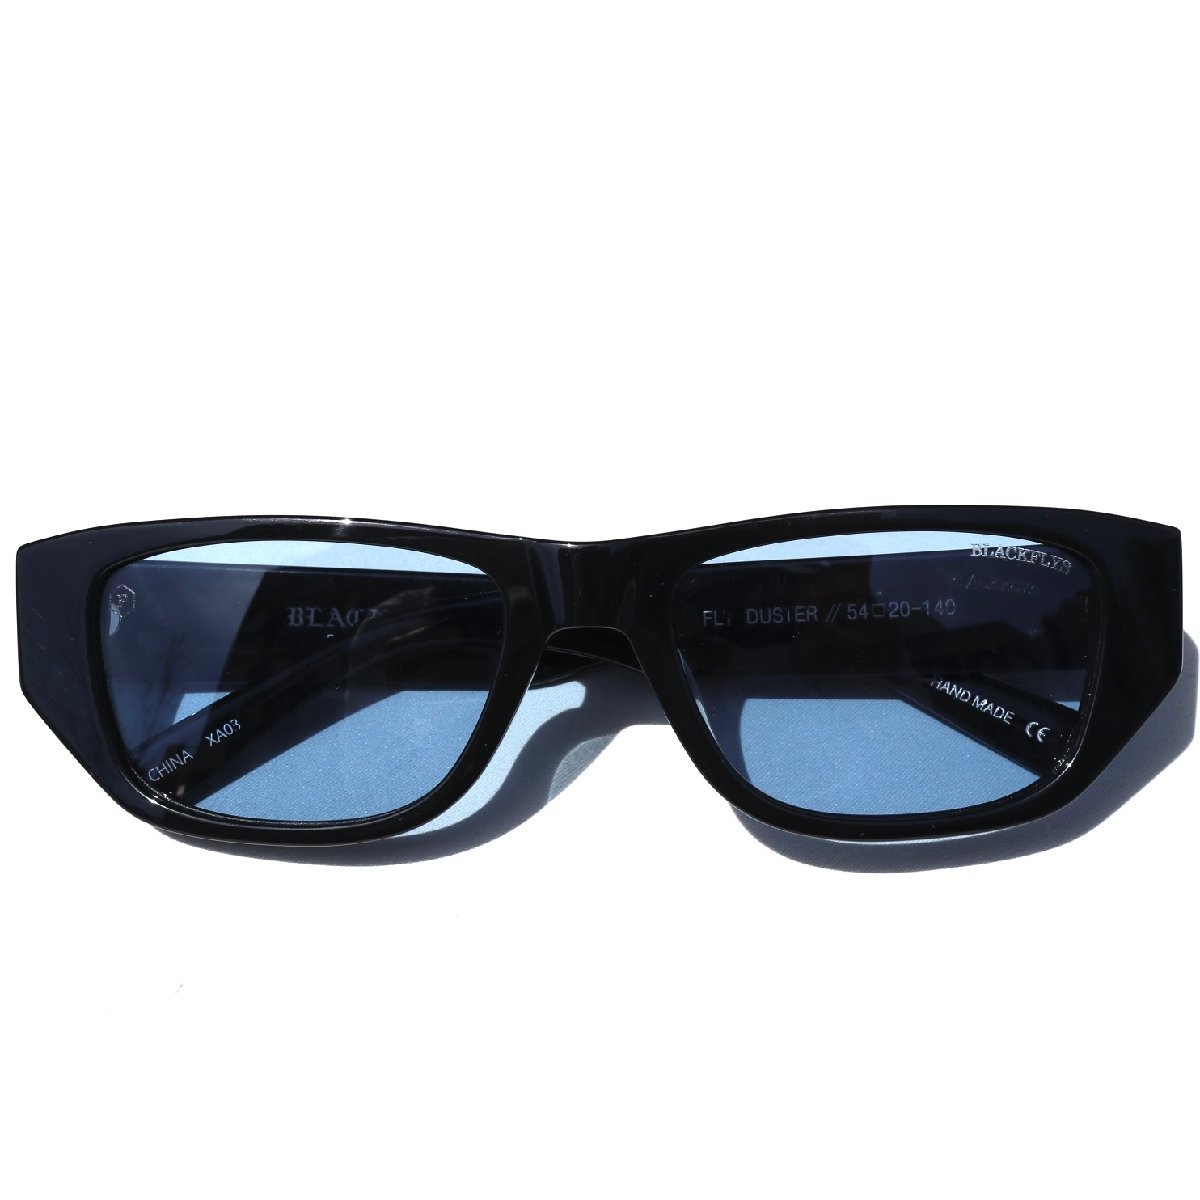  поляризованный свет голубой линзы Black Fly FLY DUSTER солнцезащитные очки BLACK/Lt.BLUE(POL) BlackFlys